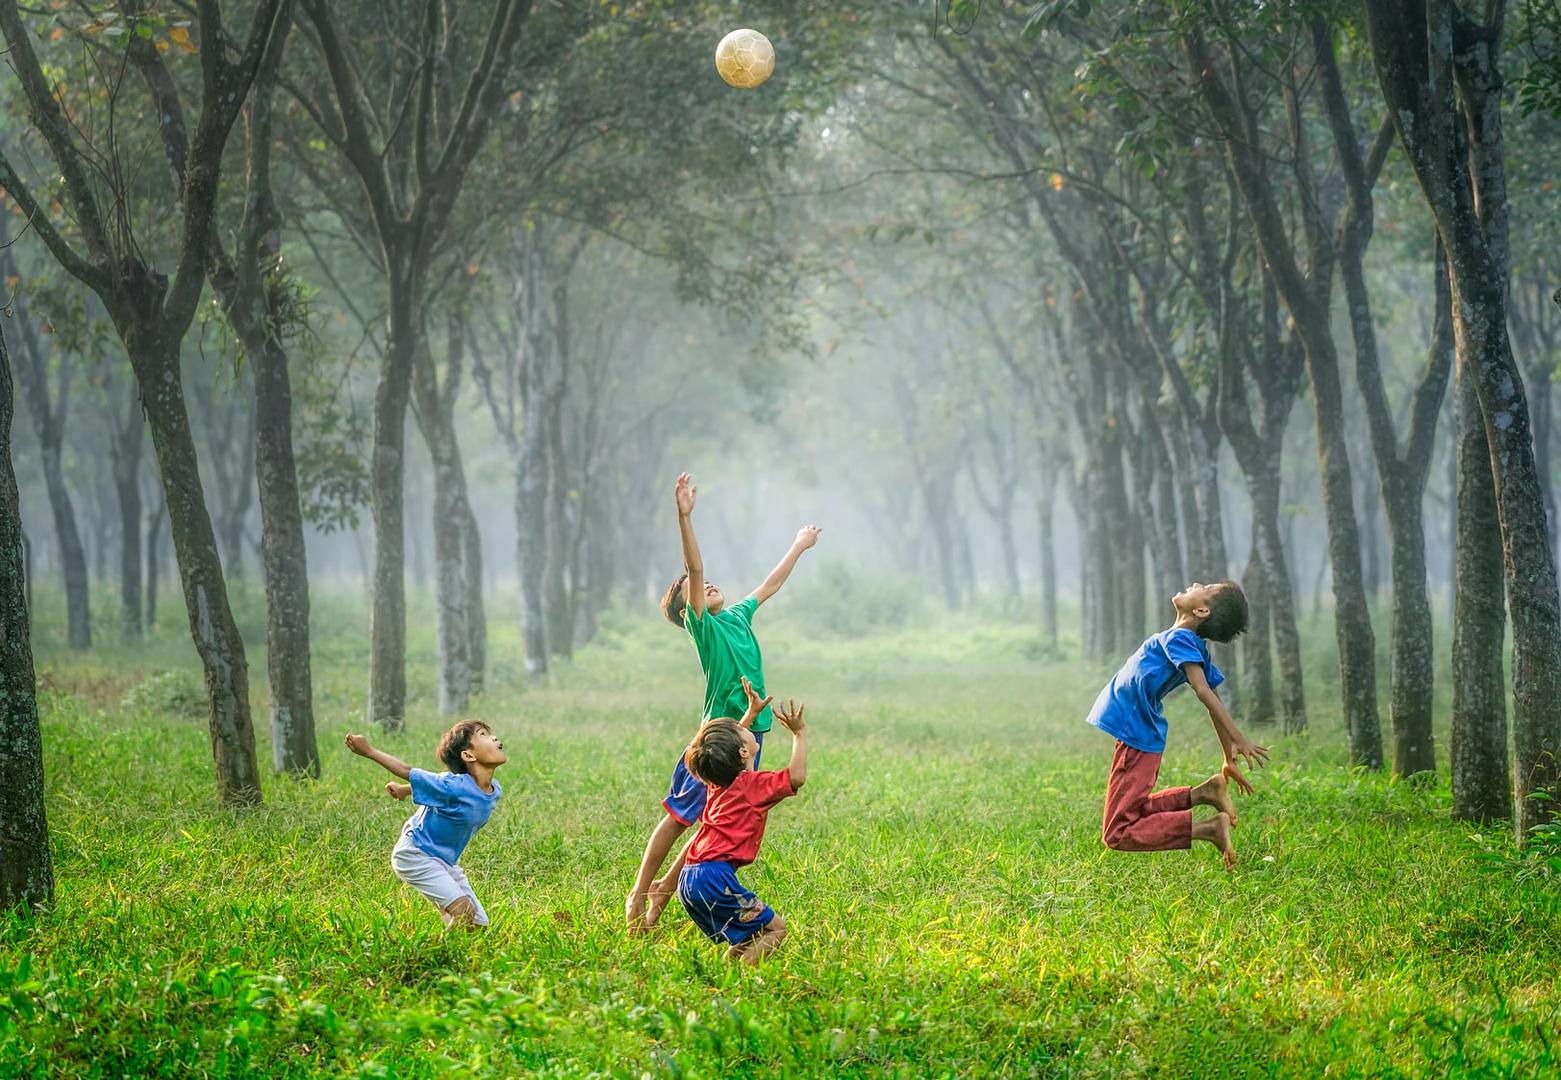 Kids having fun with ball